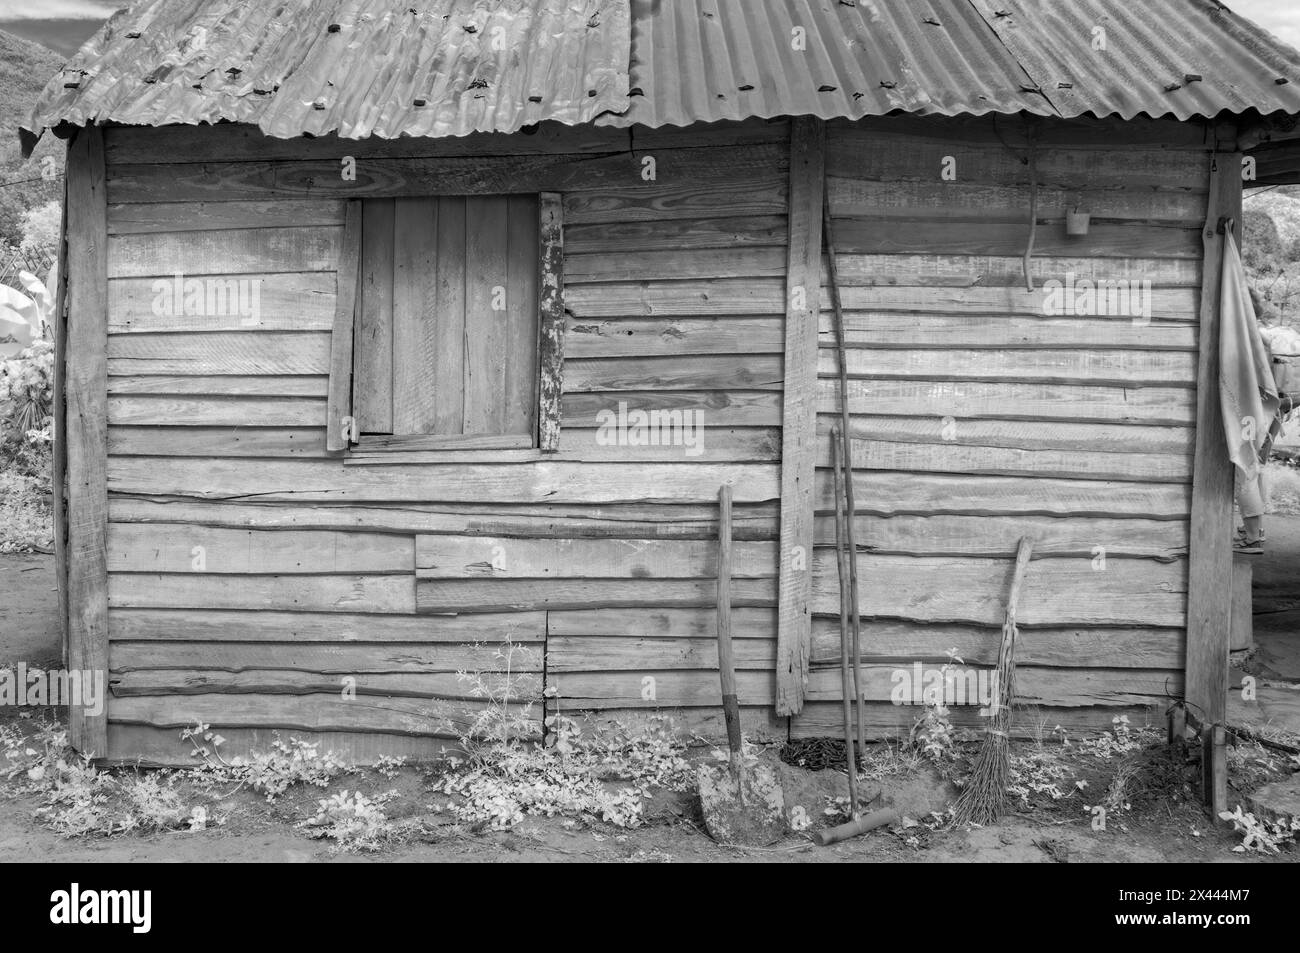 Une image infrarouge d'une ferme de base typique des bâtiments trouvés sur les petites plantations dans et autour de Vinales, Cuba Banque D'Images